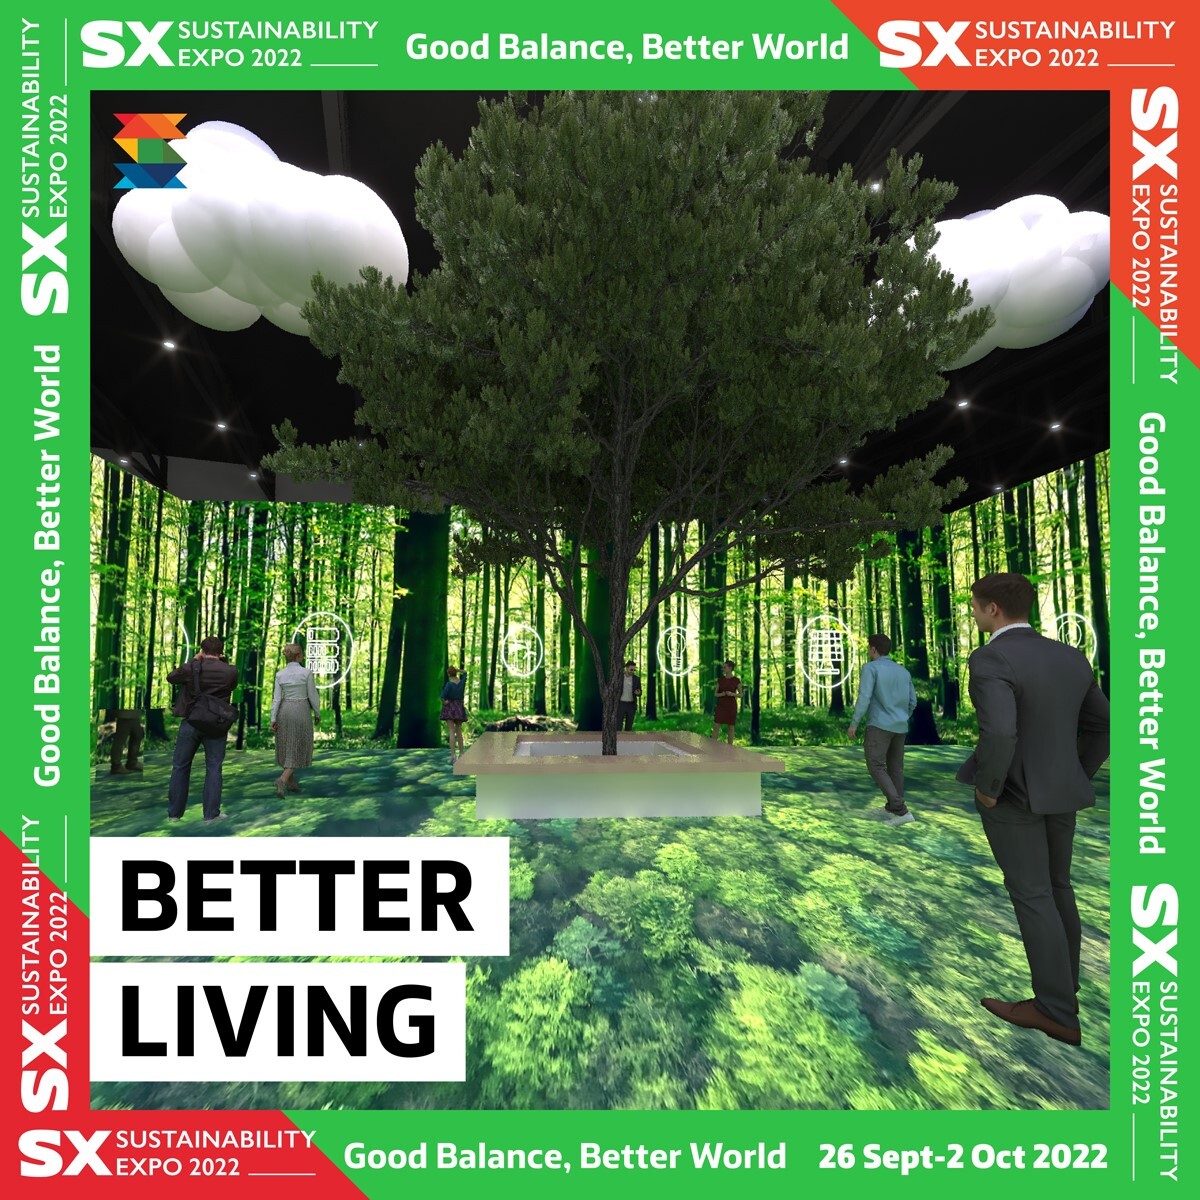 Better Living พาส่องผลงานเด่นจากองค์กรชั้นนำด้านความยั่งยืน ในงาน SX 2022